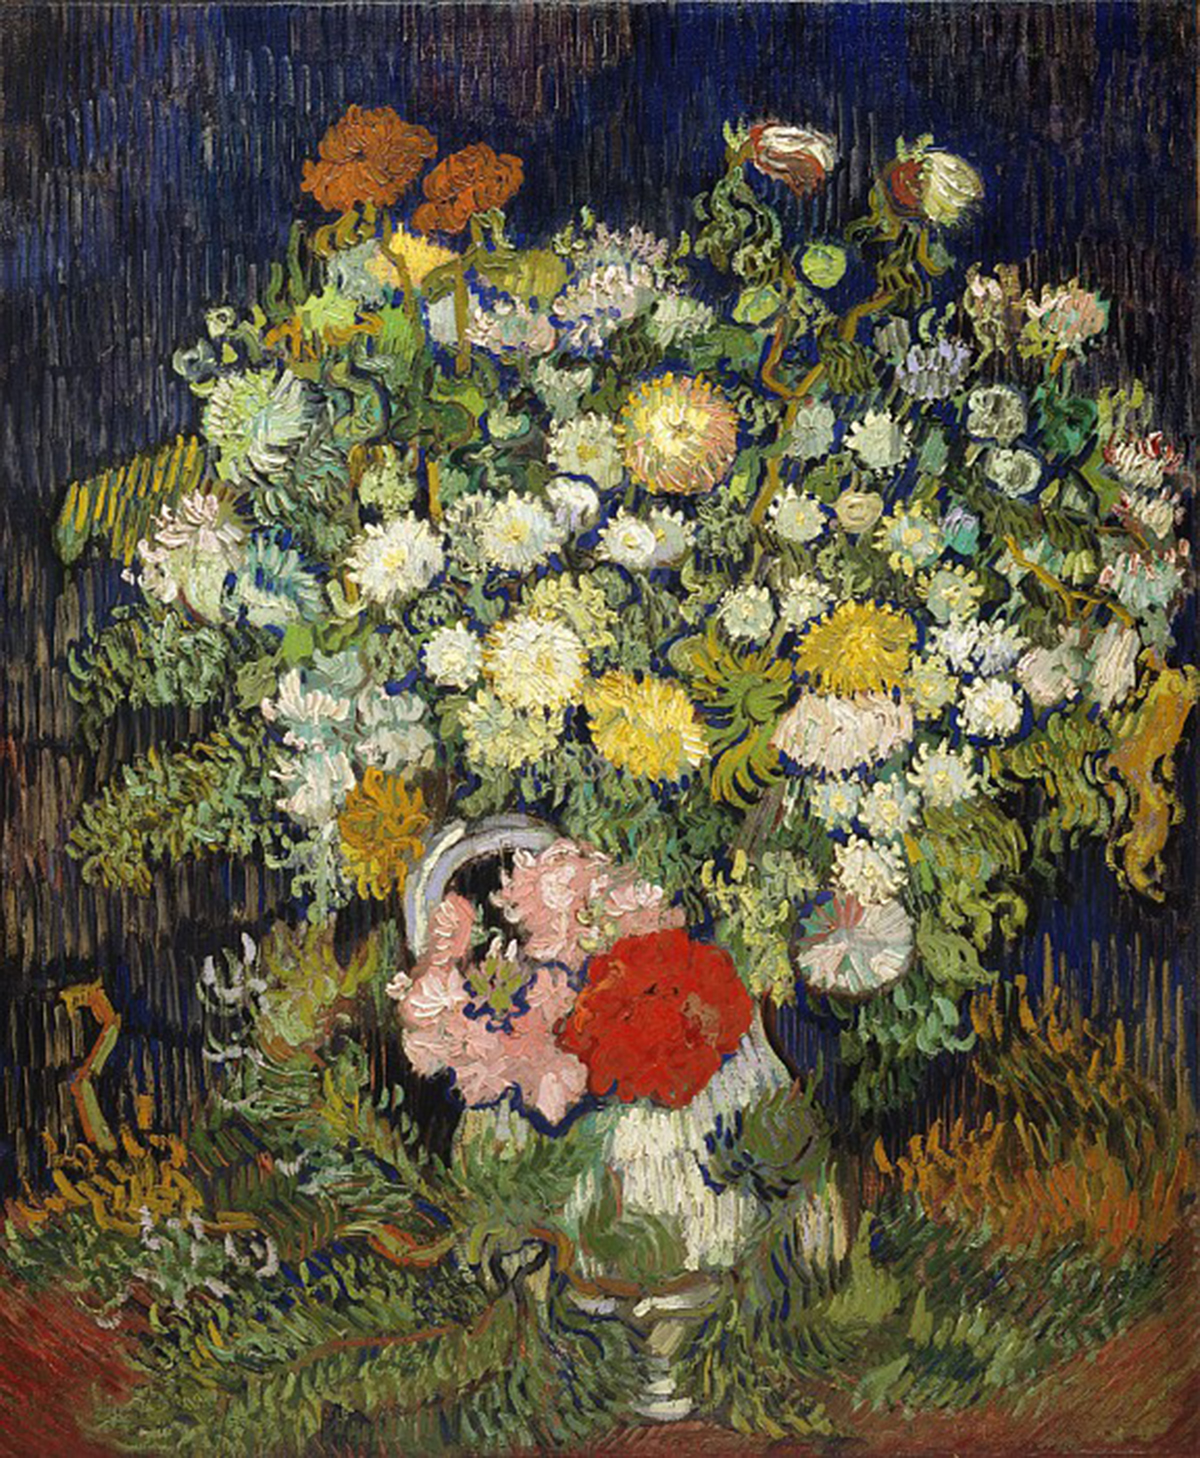 Salt: главное здесь, остальное по вкусу - Винсент Ван Гог «Букет цветов в вазе», 1890